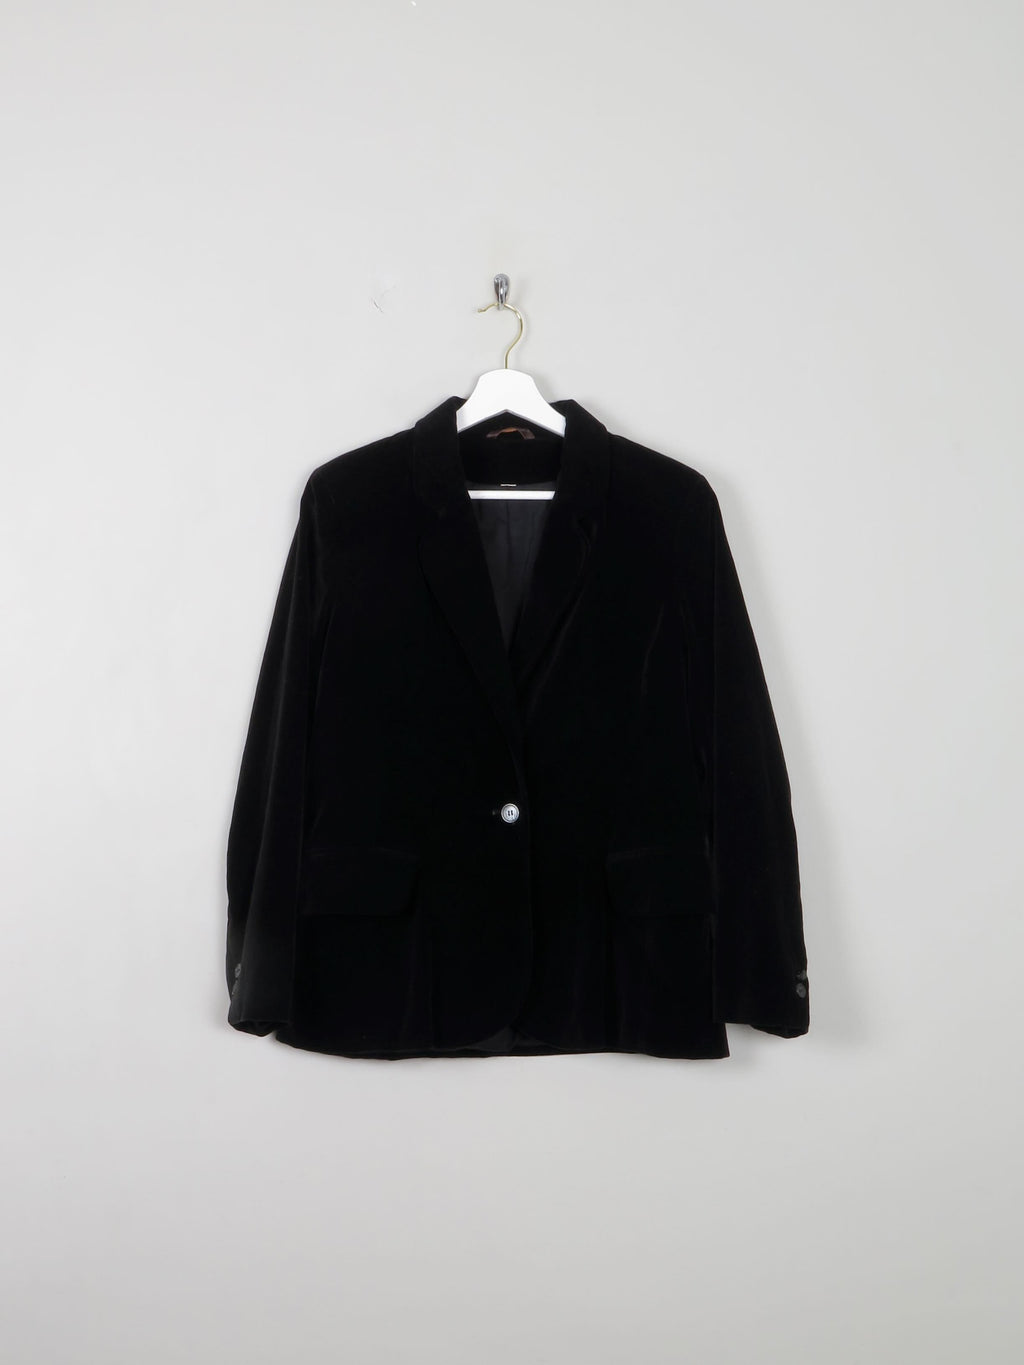 Women's Vintage Velvet Jacket Black Tailored S - The Harlequin